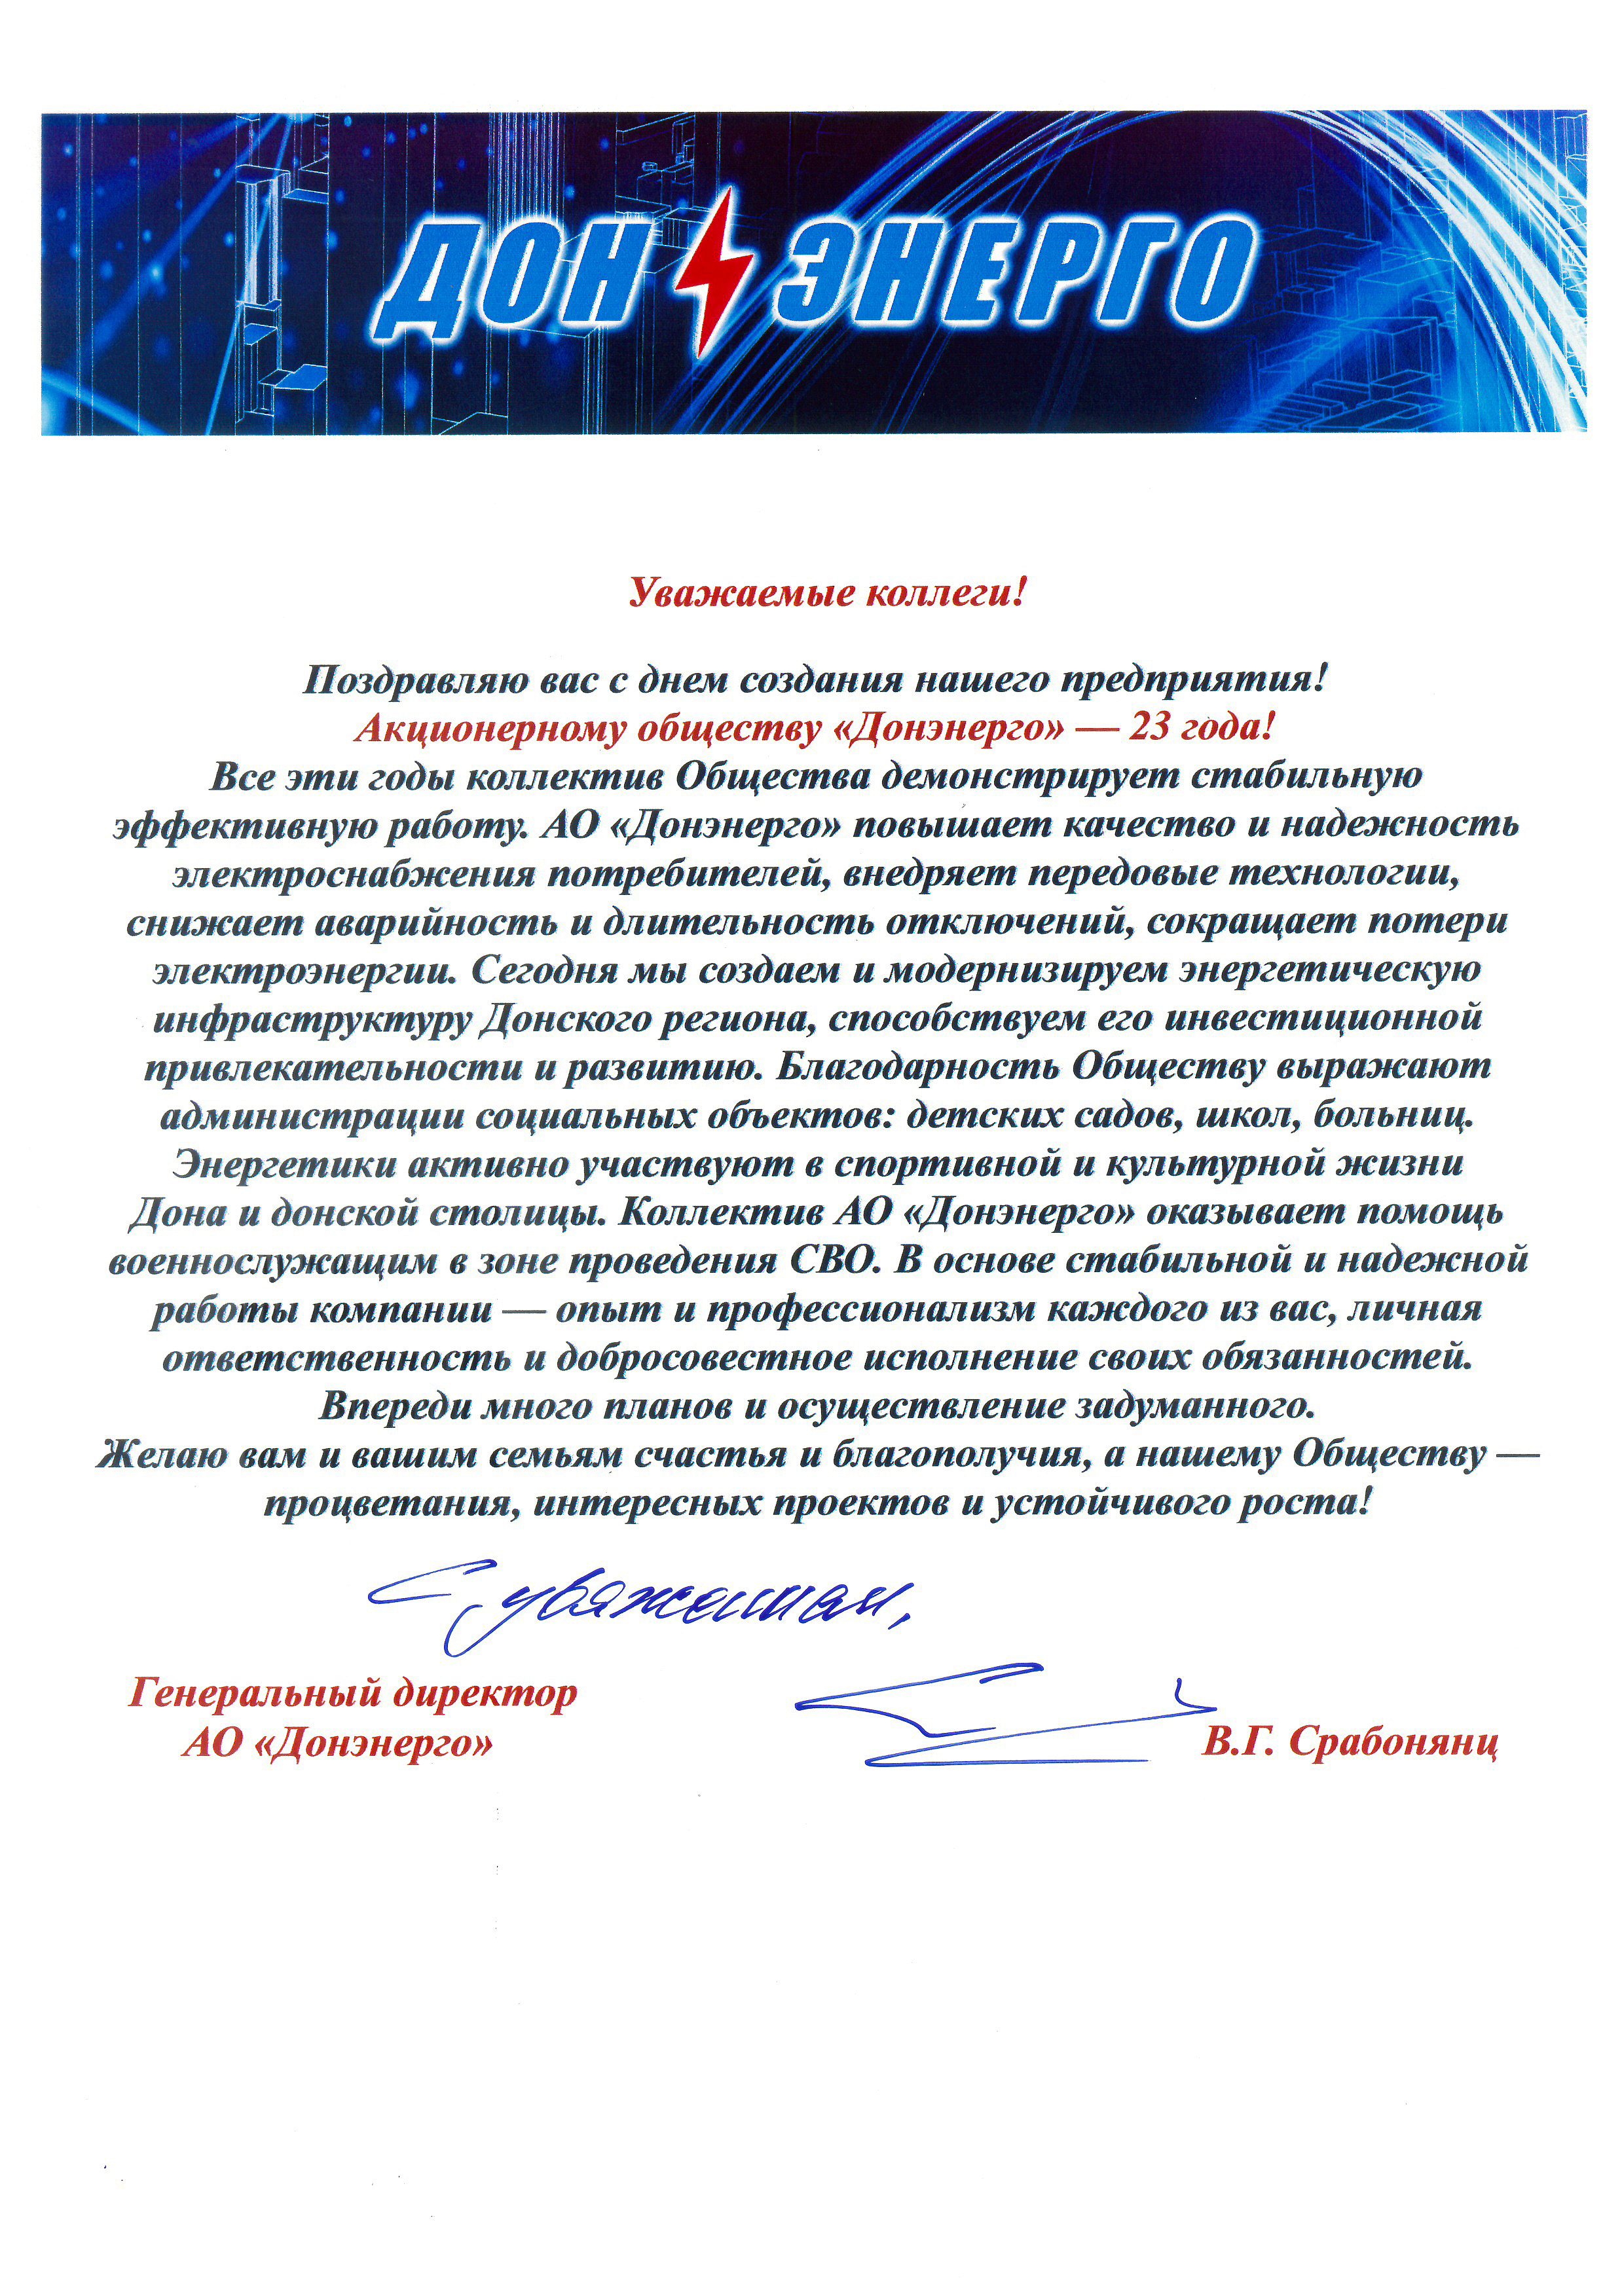 Поздравление генерального директора АО «Донэнерго» В.Г. Срабонянц с Днём создания компании